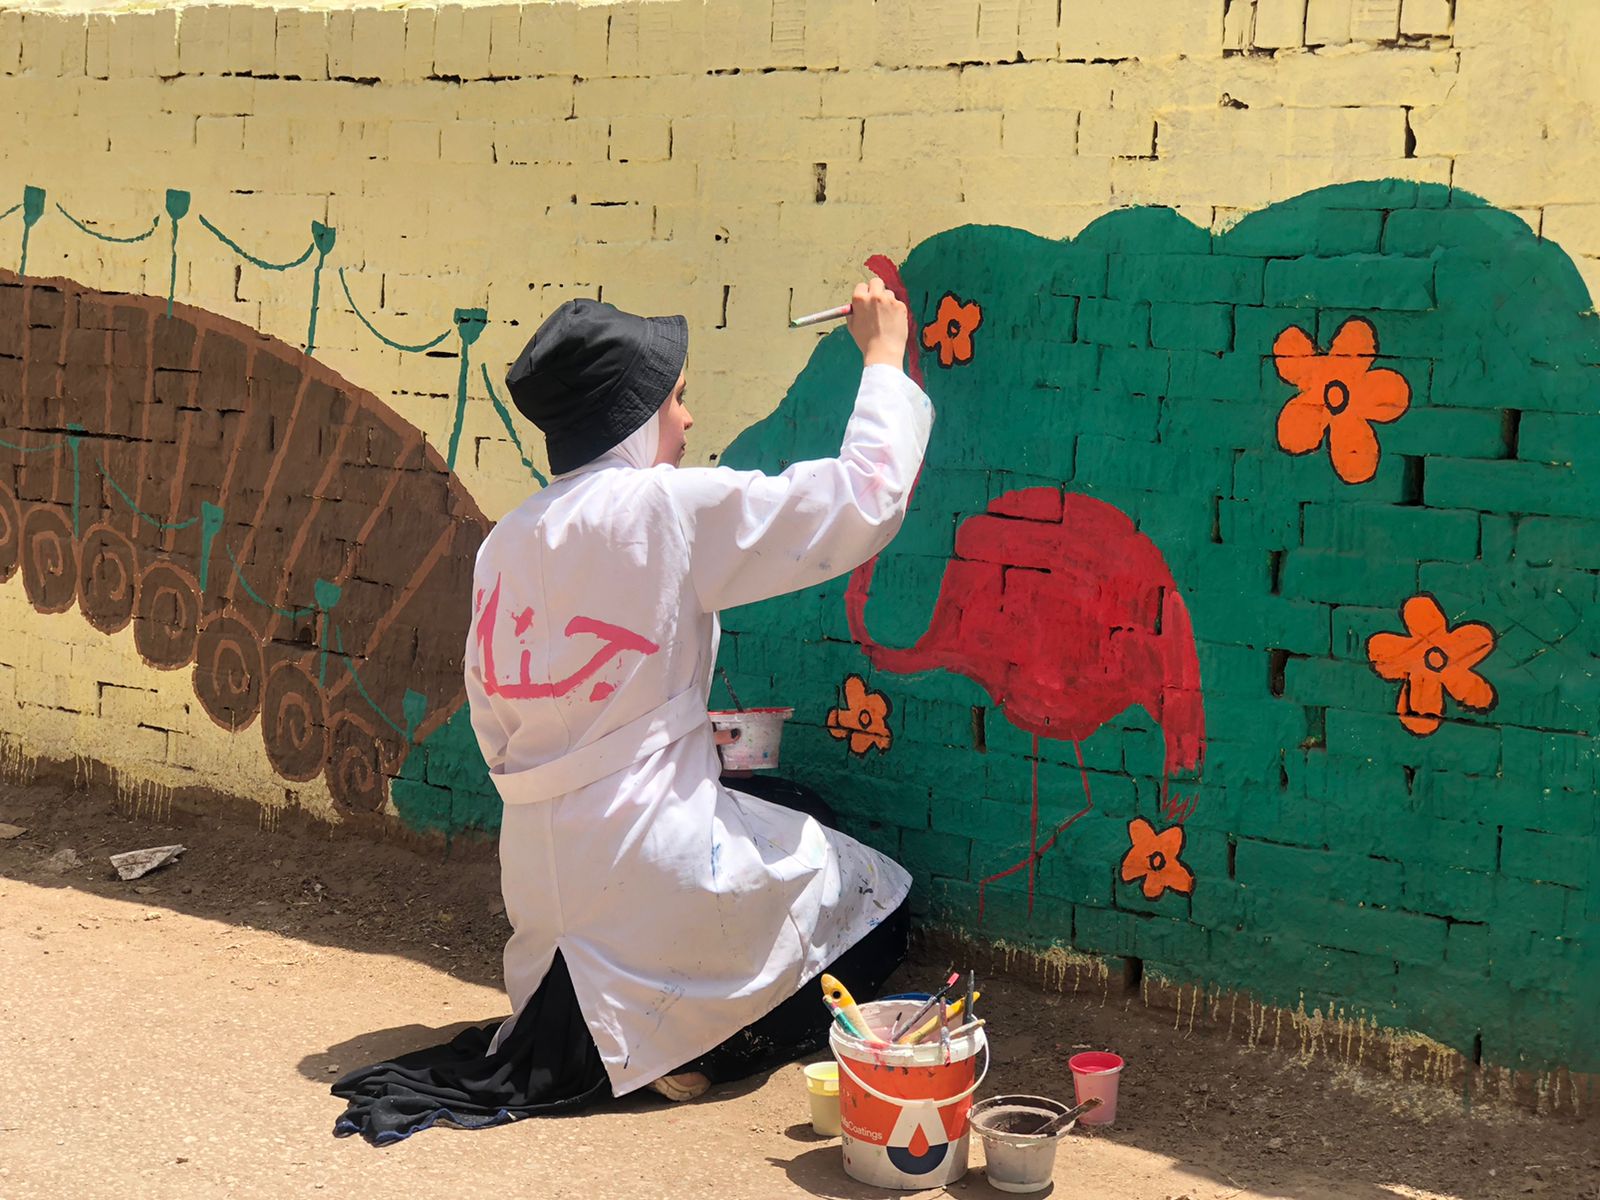 جنة أحمد تزين شوارع الدقهلية بجداريات فنية (3)